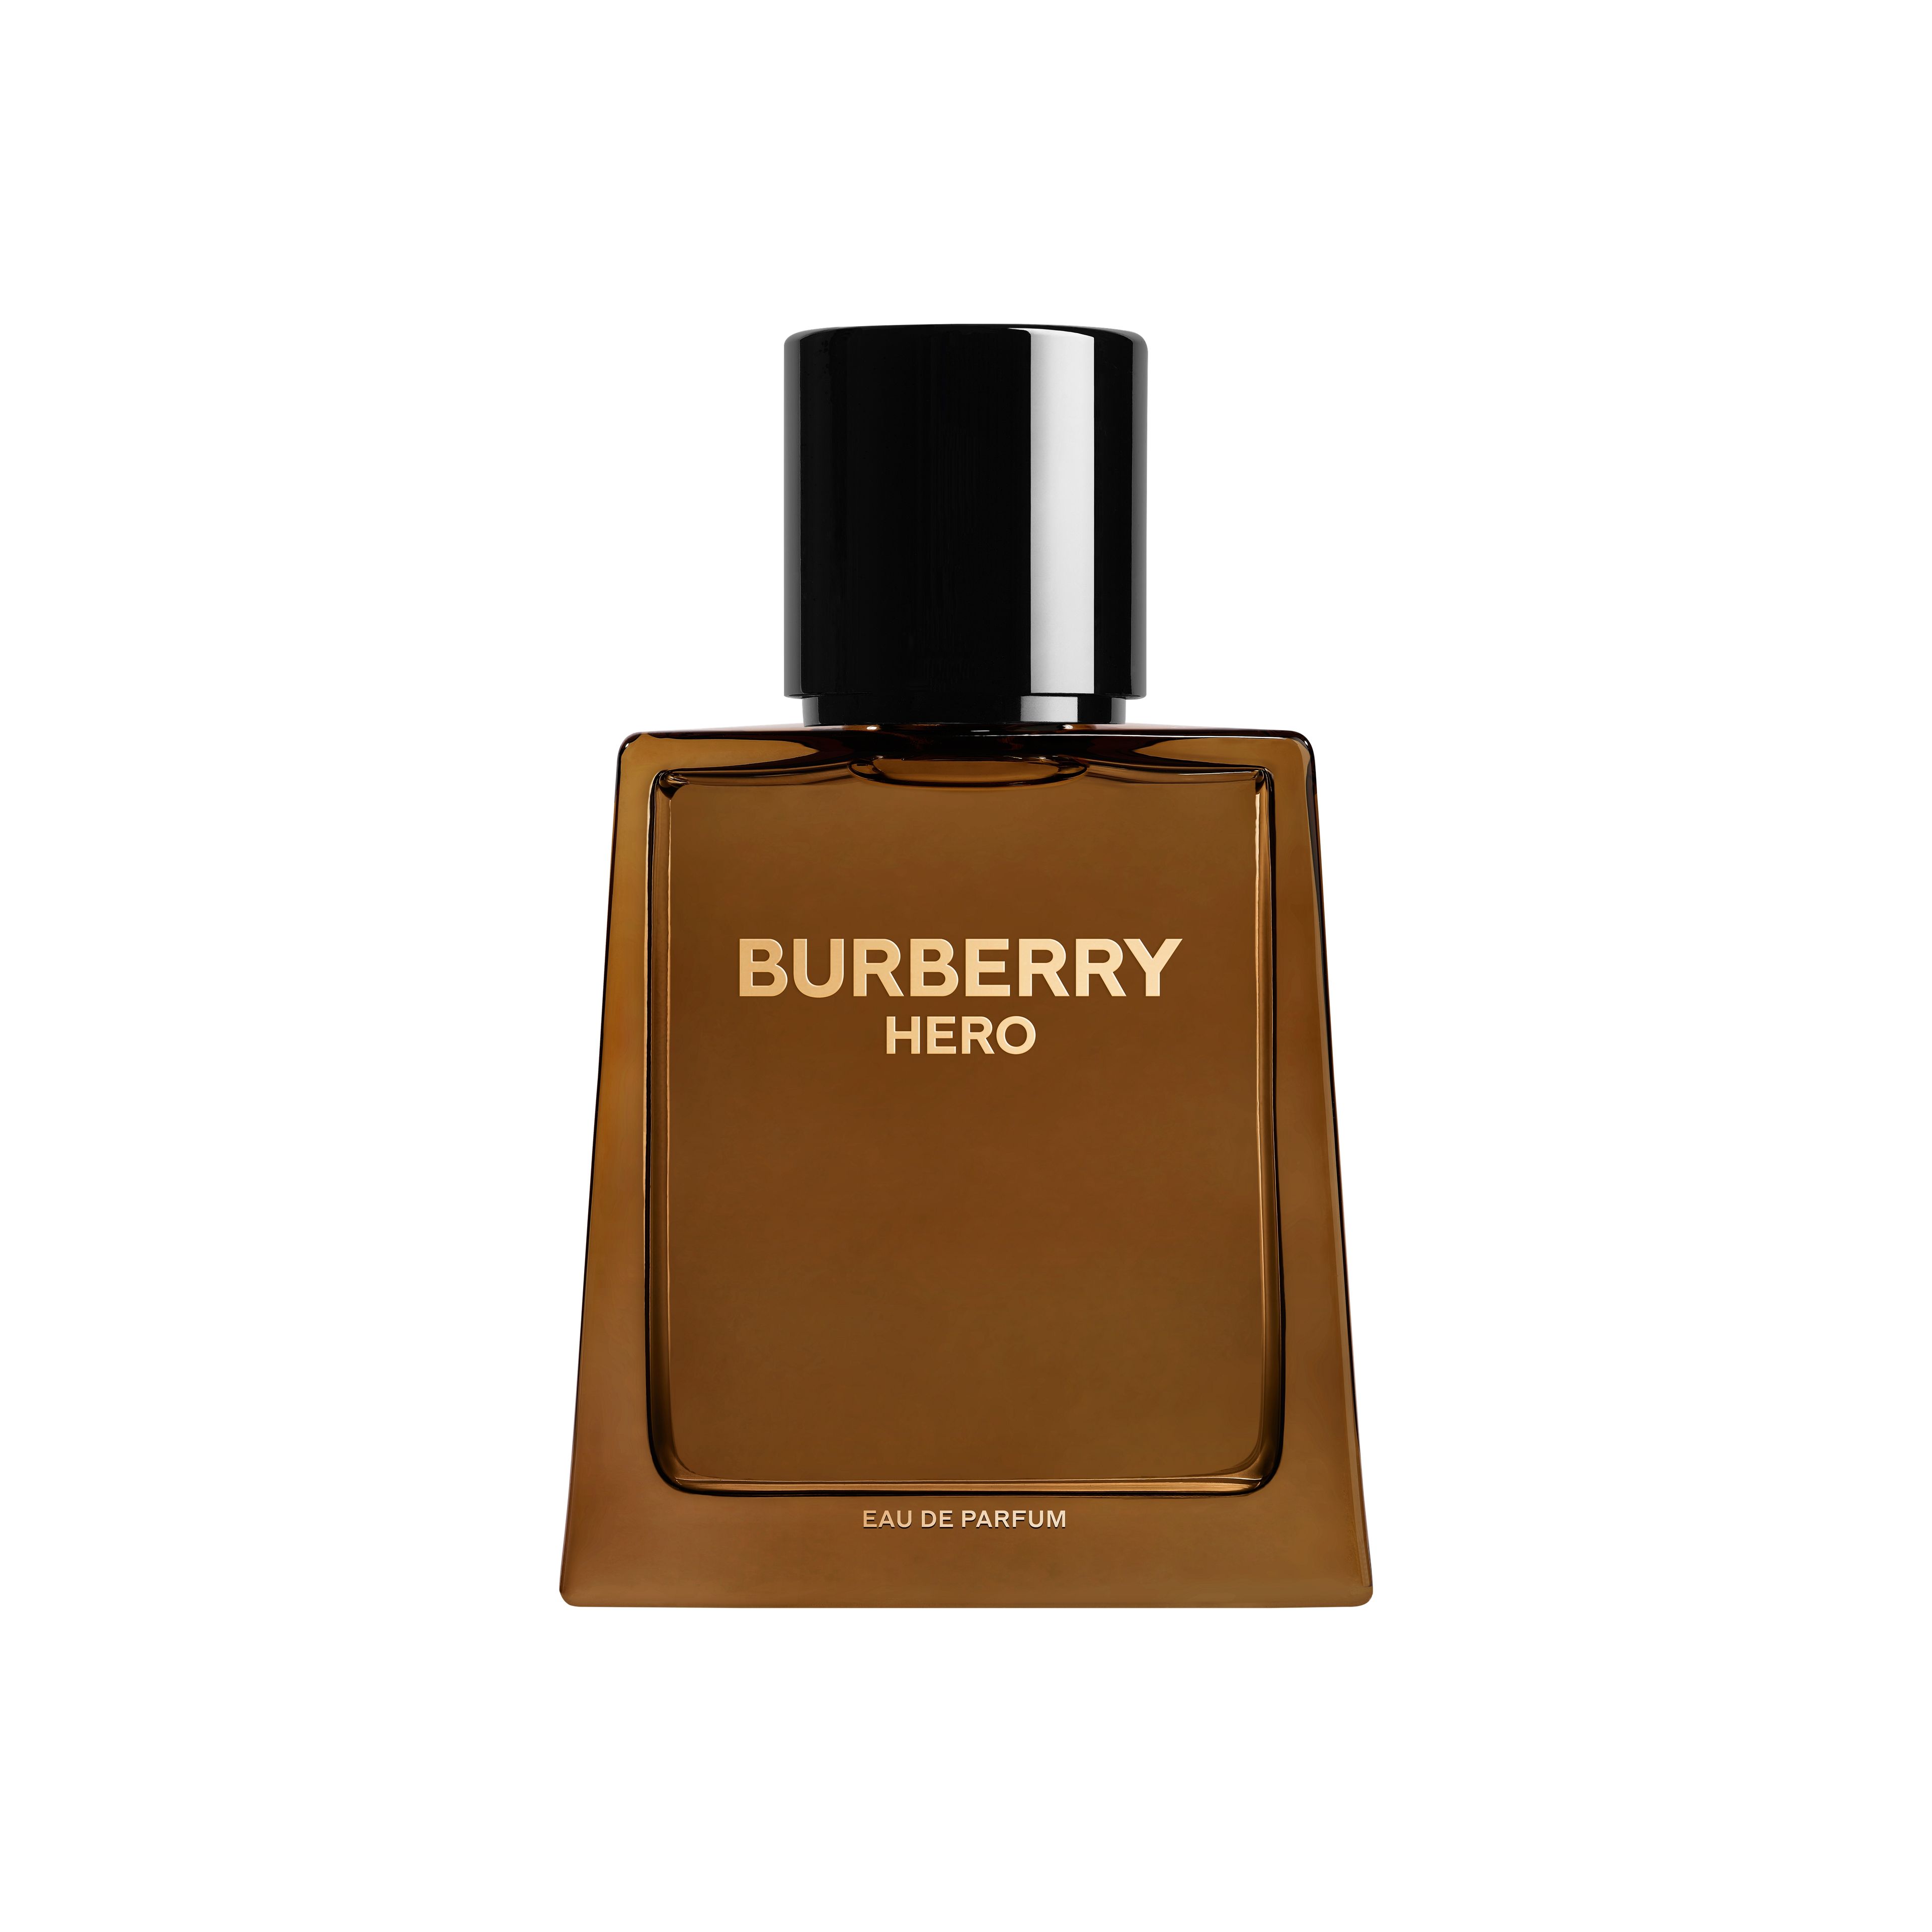 Burberry Burberry Hero Eau De Parfum 1